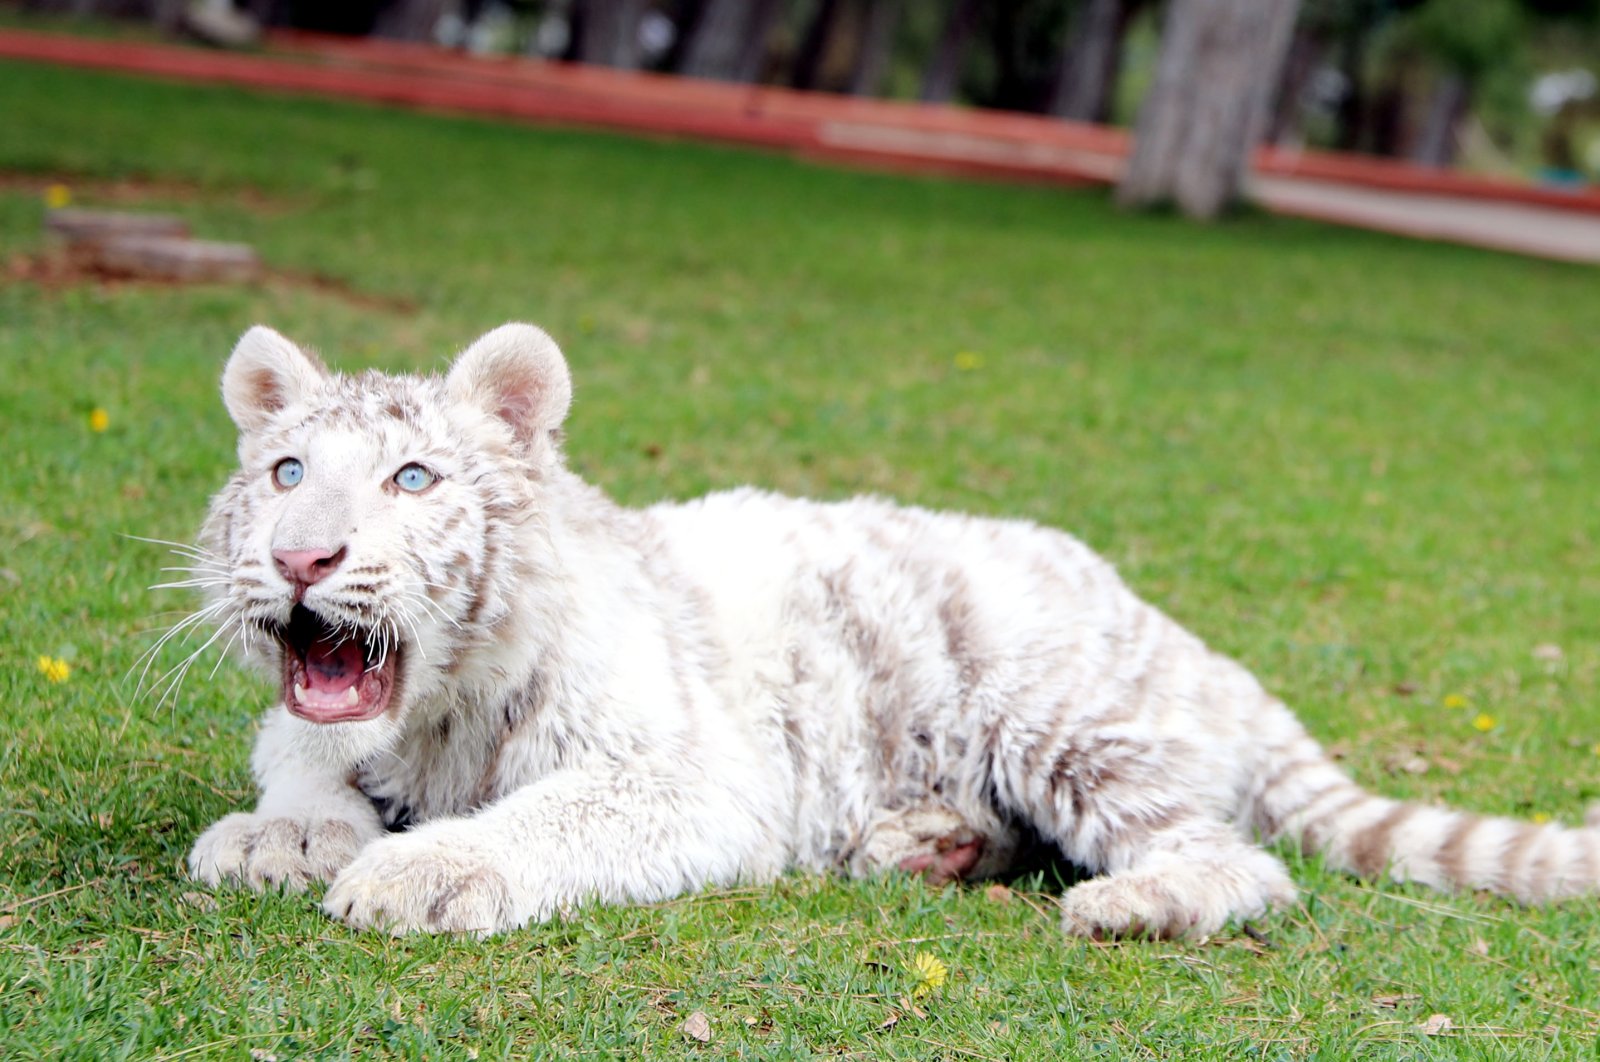 Anak harimau Bengal putih langka ditempatkan di kebun binatang Turki